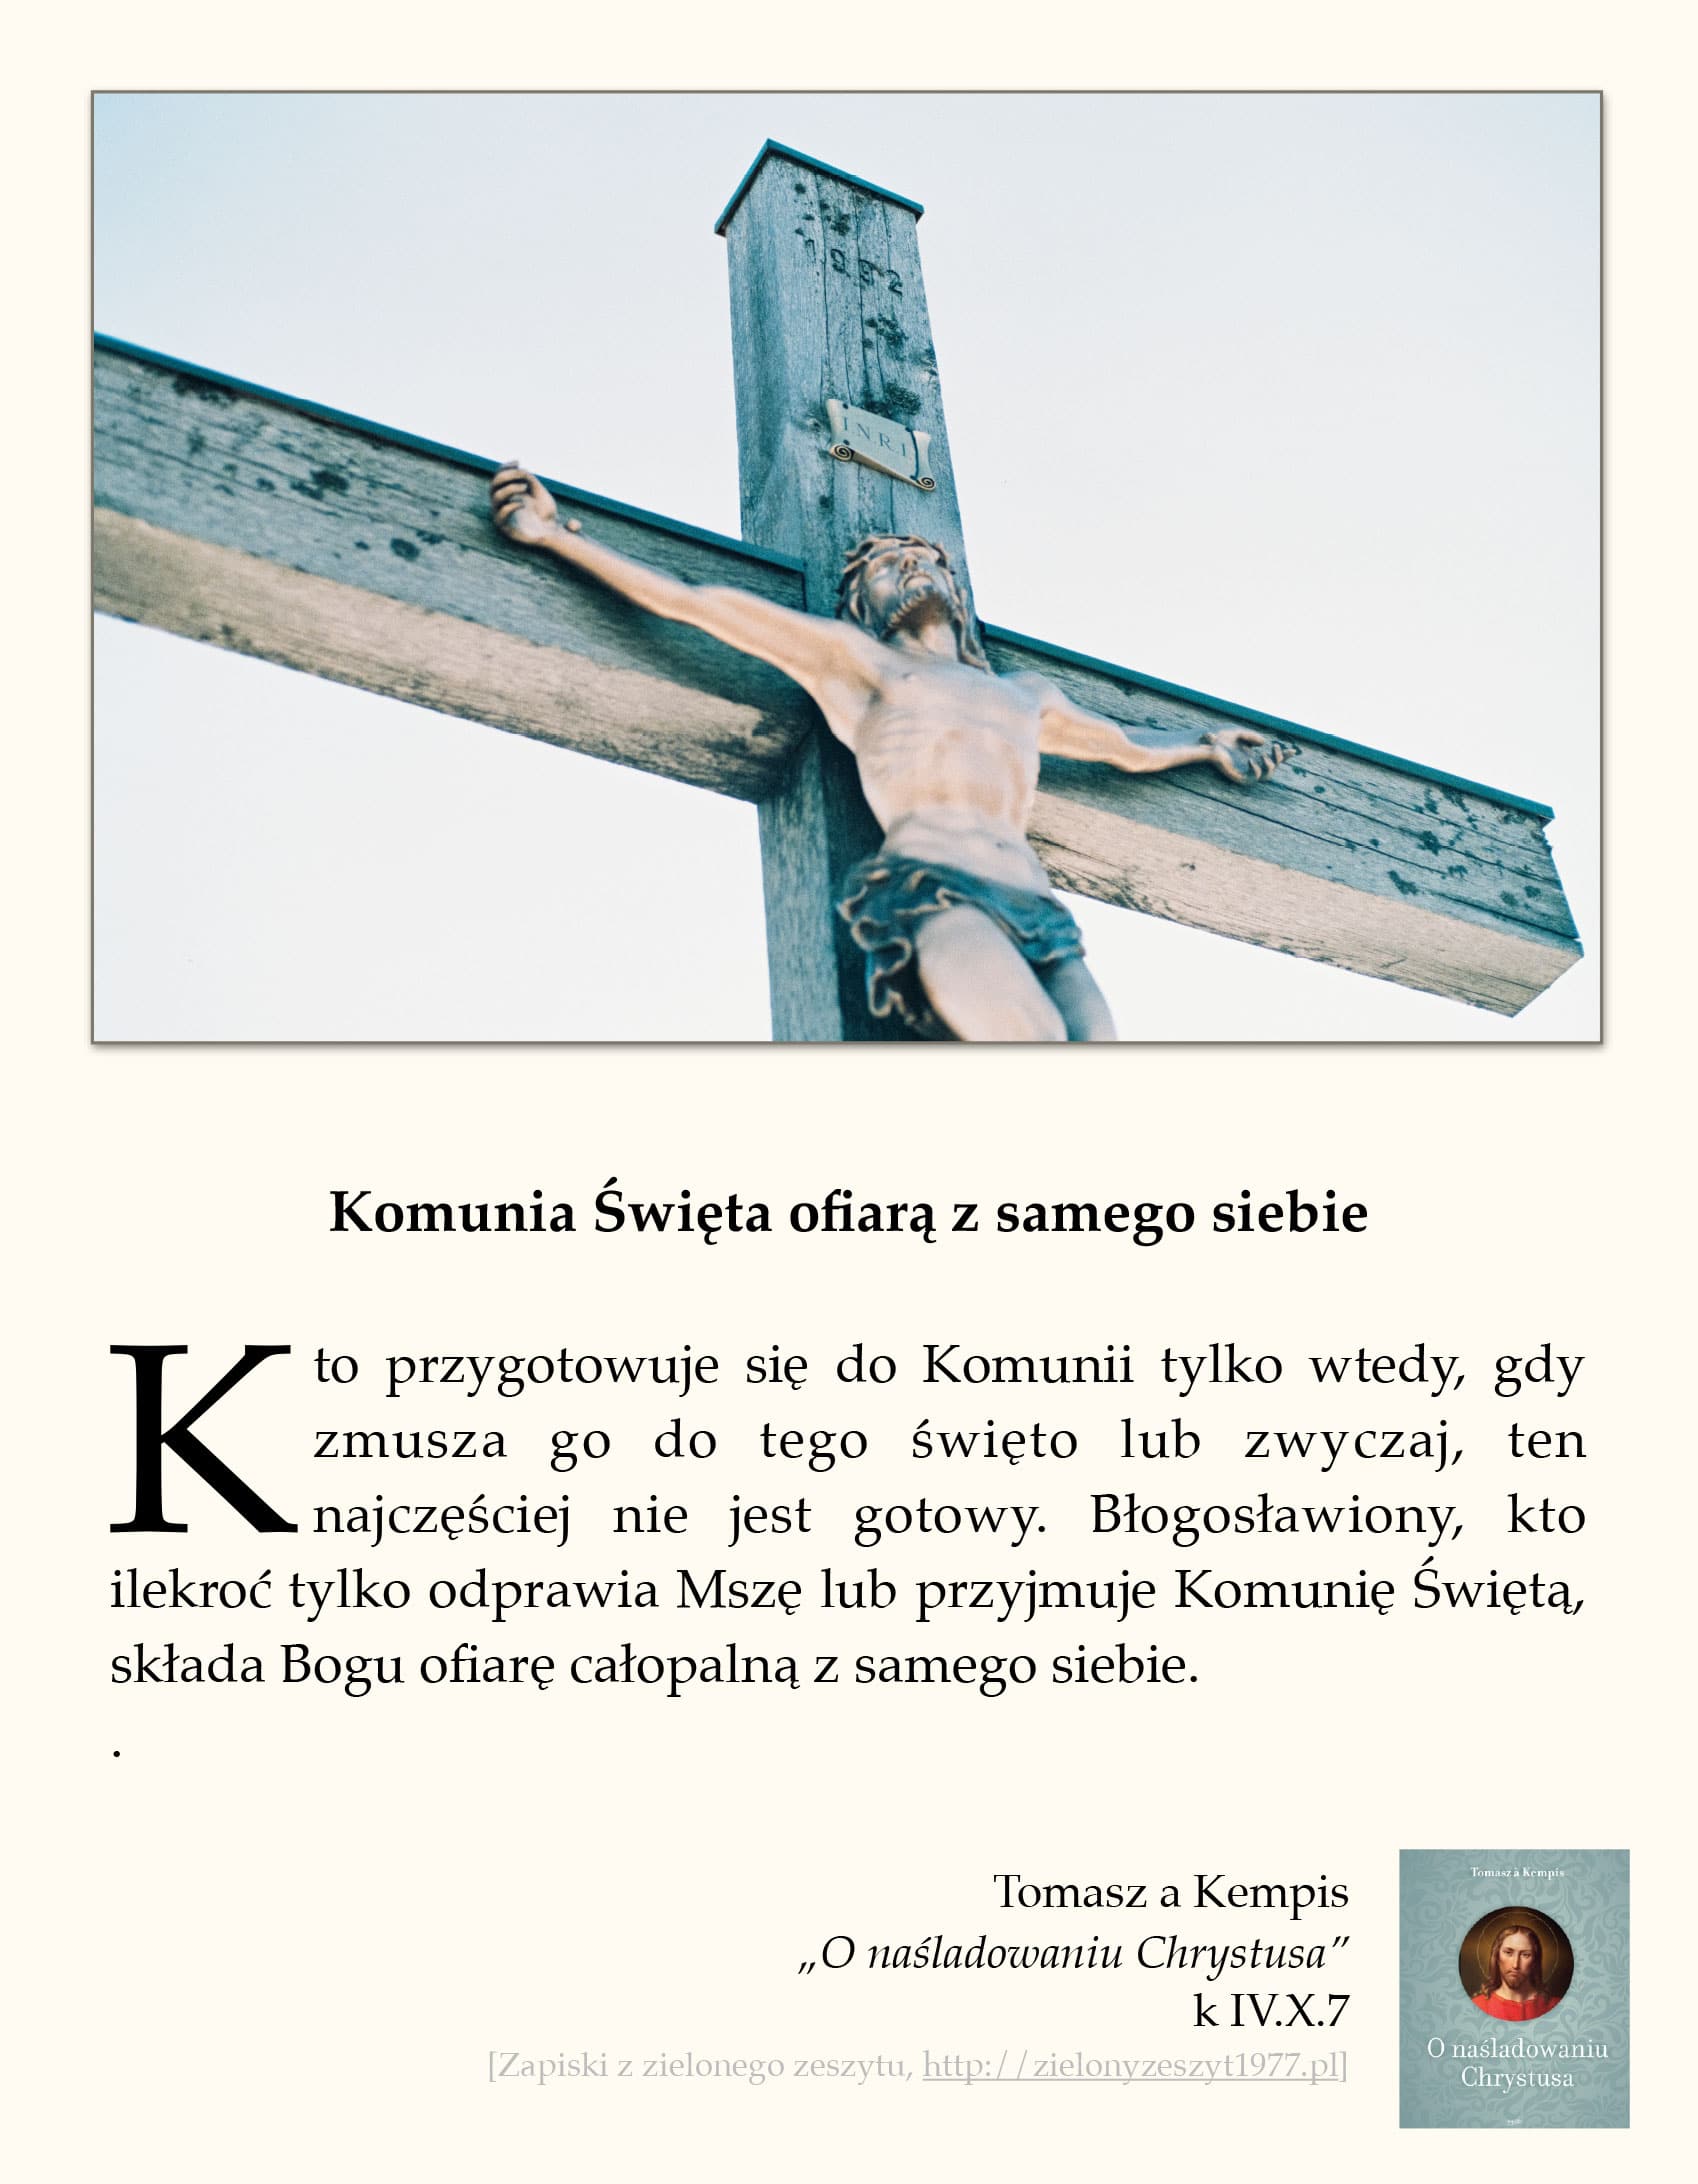 Tomasz a Kempis, „O naśladowaniu Chrystusa”, k IV.X.7 (Komunia Święta ofiarą z samego siebie)